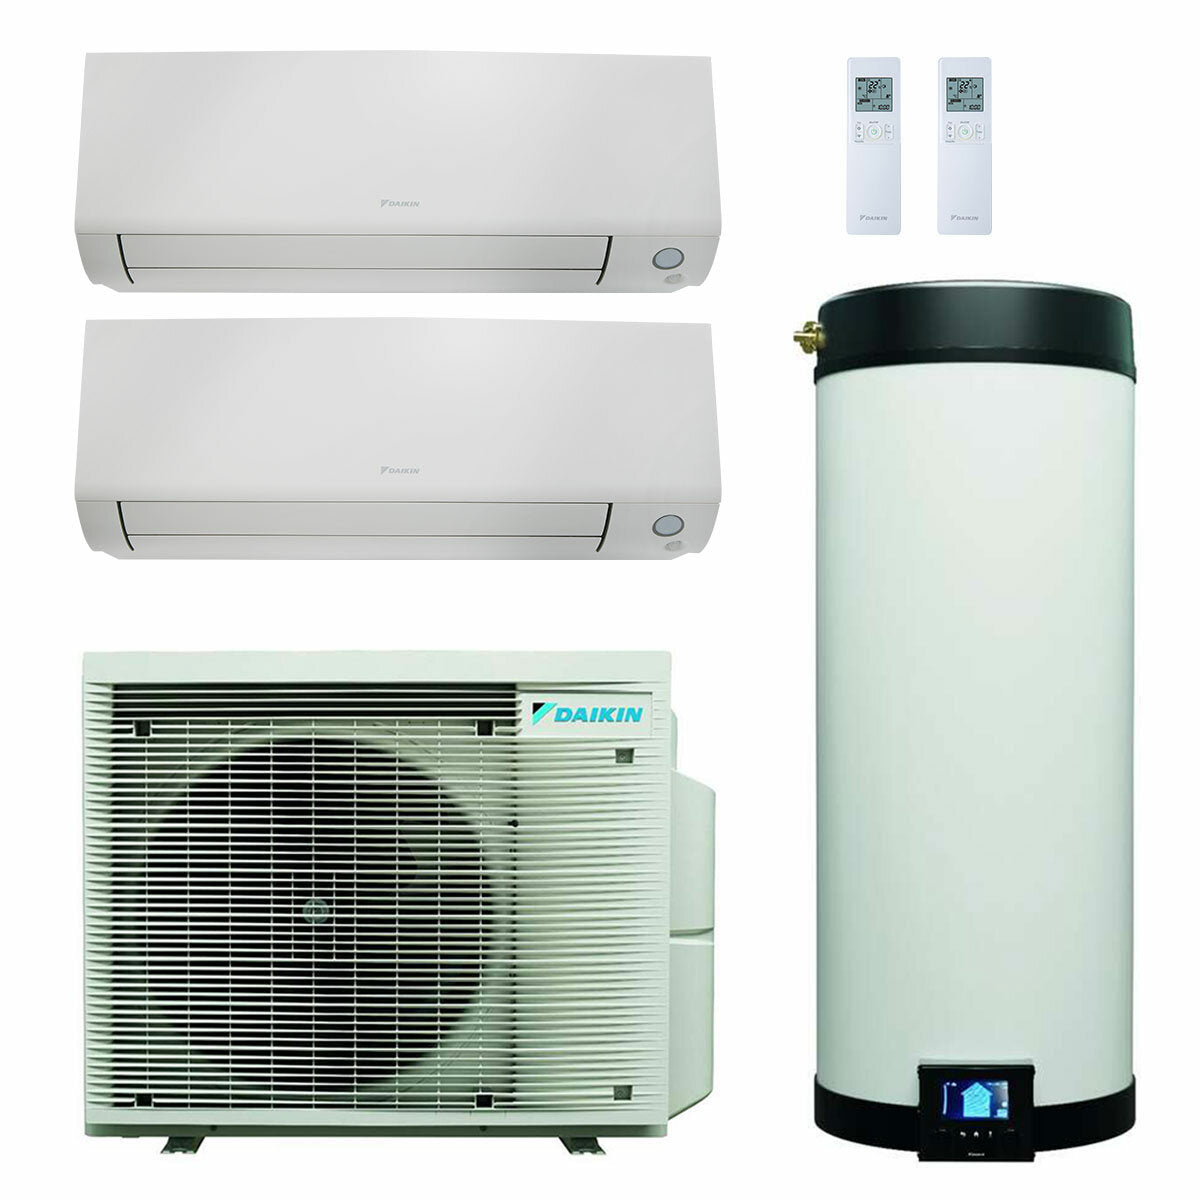 Système de climatisation et d'eau chaude sanitaire double split Daikin Multi+ - Unités intérieures Perfera All Seasons 12000+12000 BTU - Réservoir 90 l